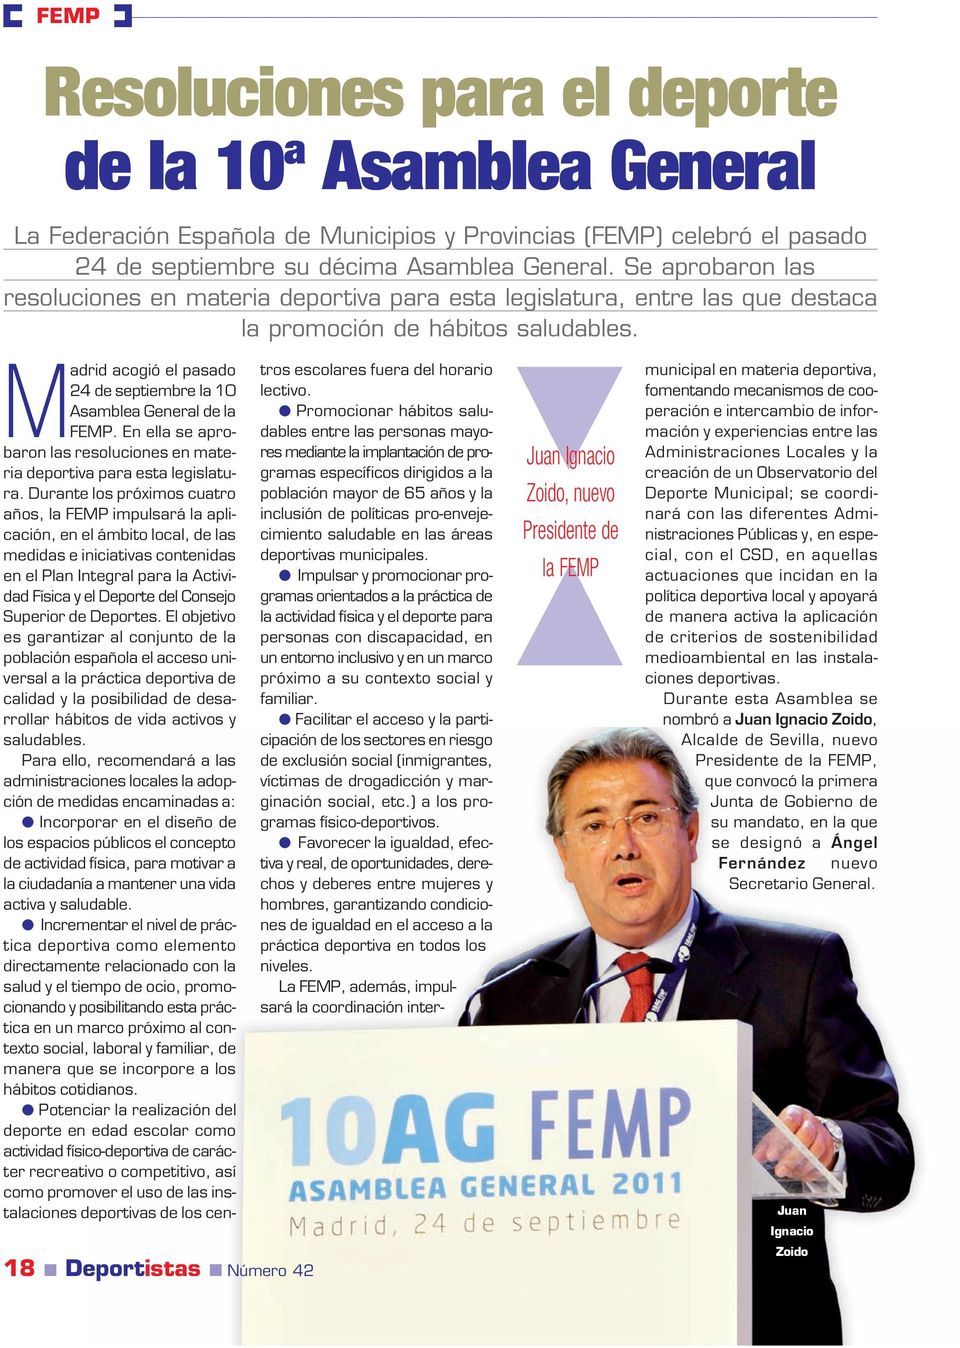 18 Deportistas Número 42 Juan Ignacio Zoido, nuevo Presidente de la FEMP Madrid acogió el pasado 24 de septiembre la 10 Asamblea General de la FEMP.